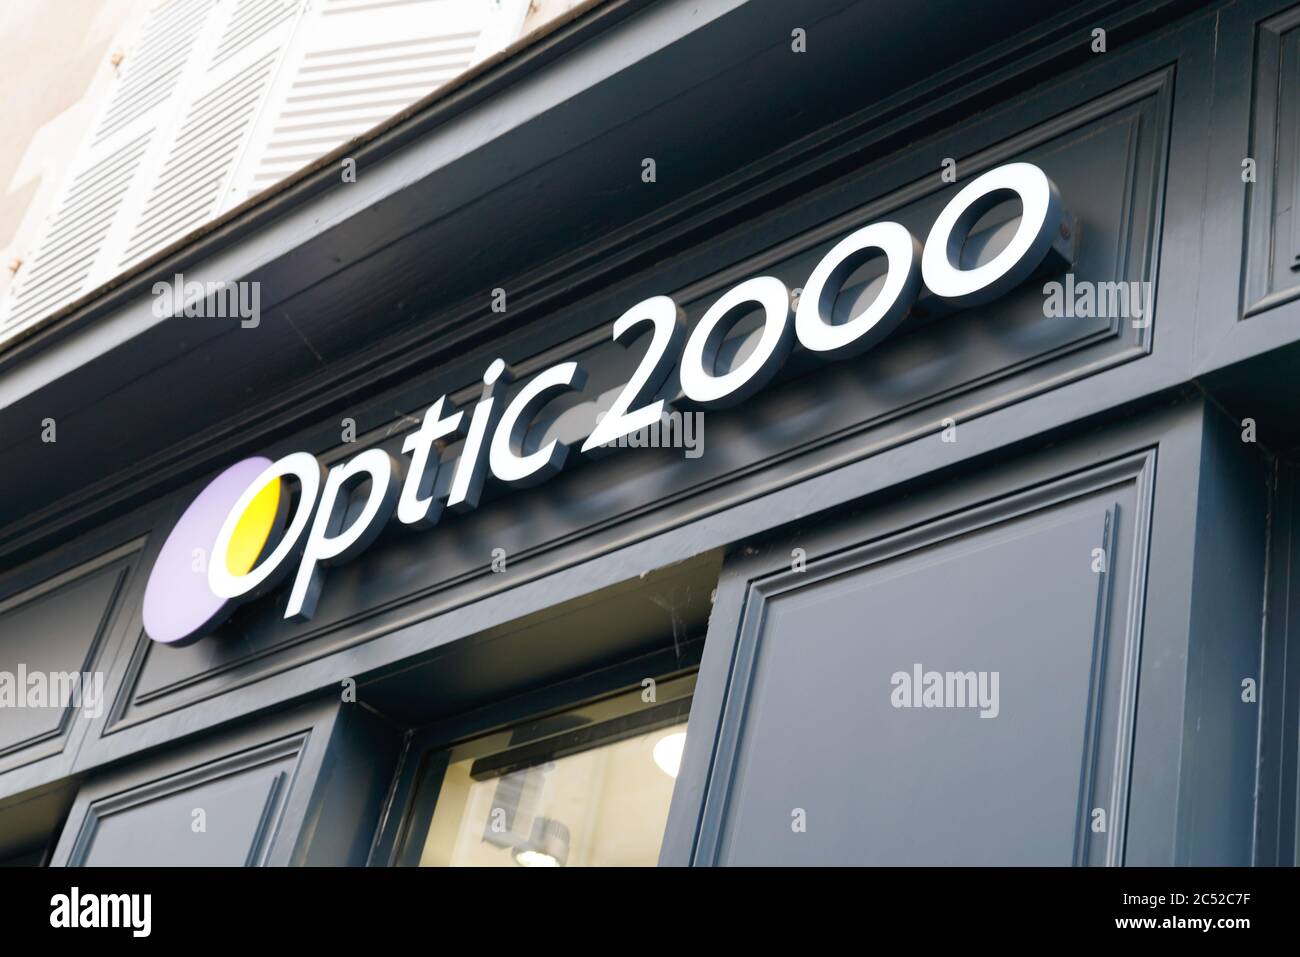 Optique 2000 Banque de photographies et d'images à haute résolution - Alamy